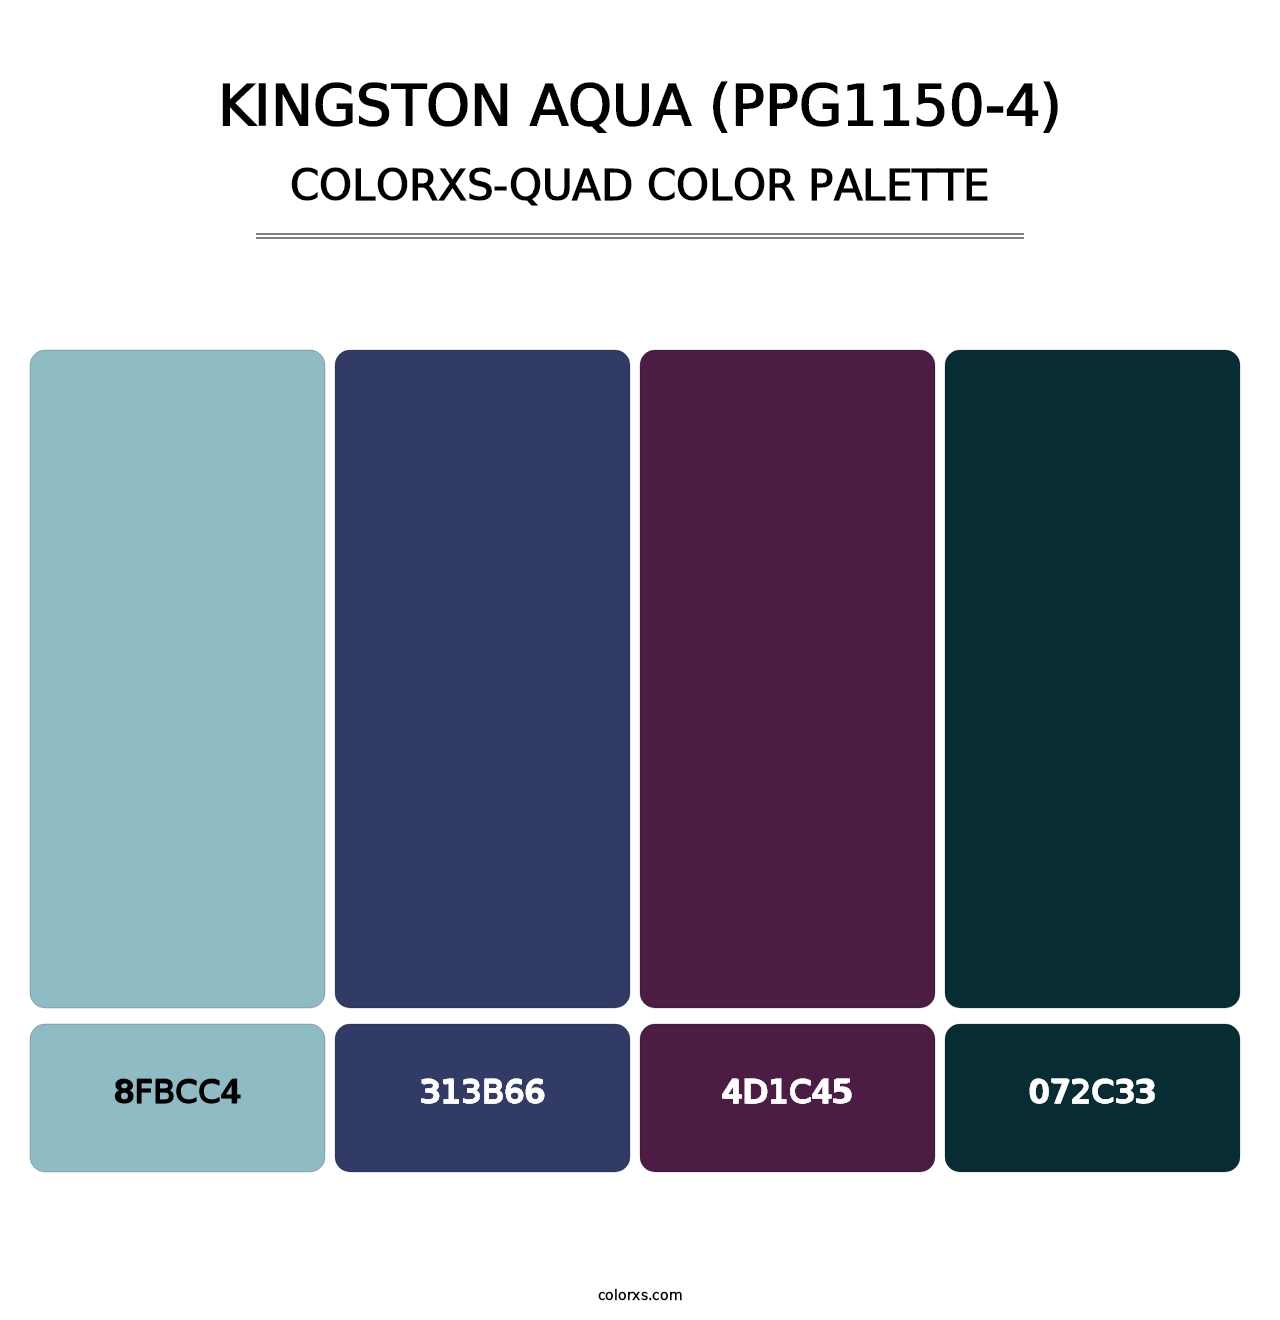 Kingston Aqua (PPG1150-4) - Colorxs Quad Palette